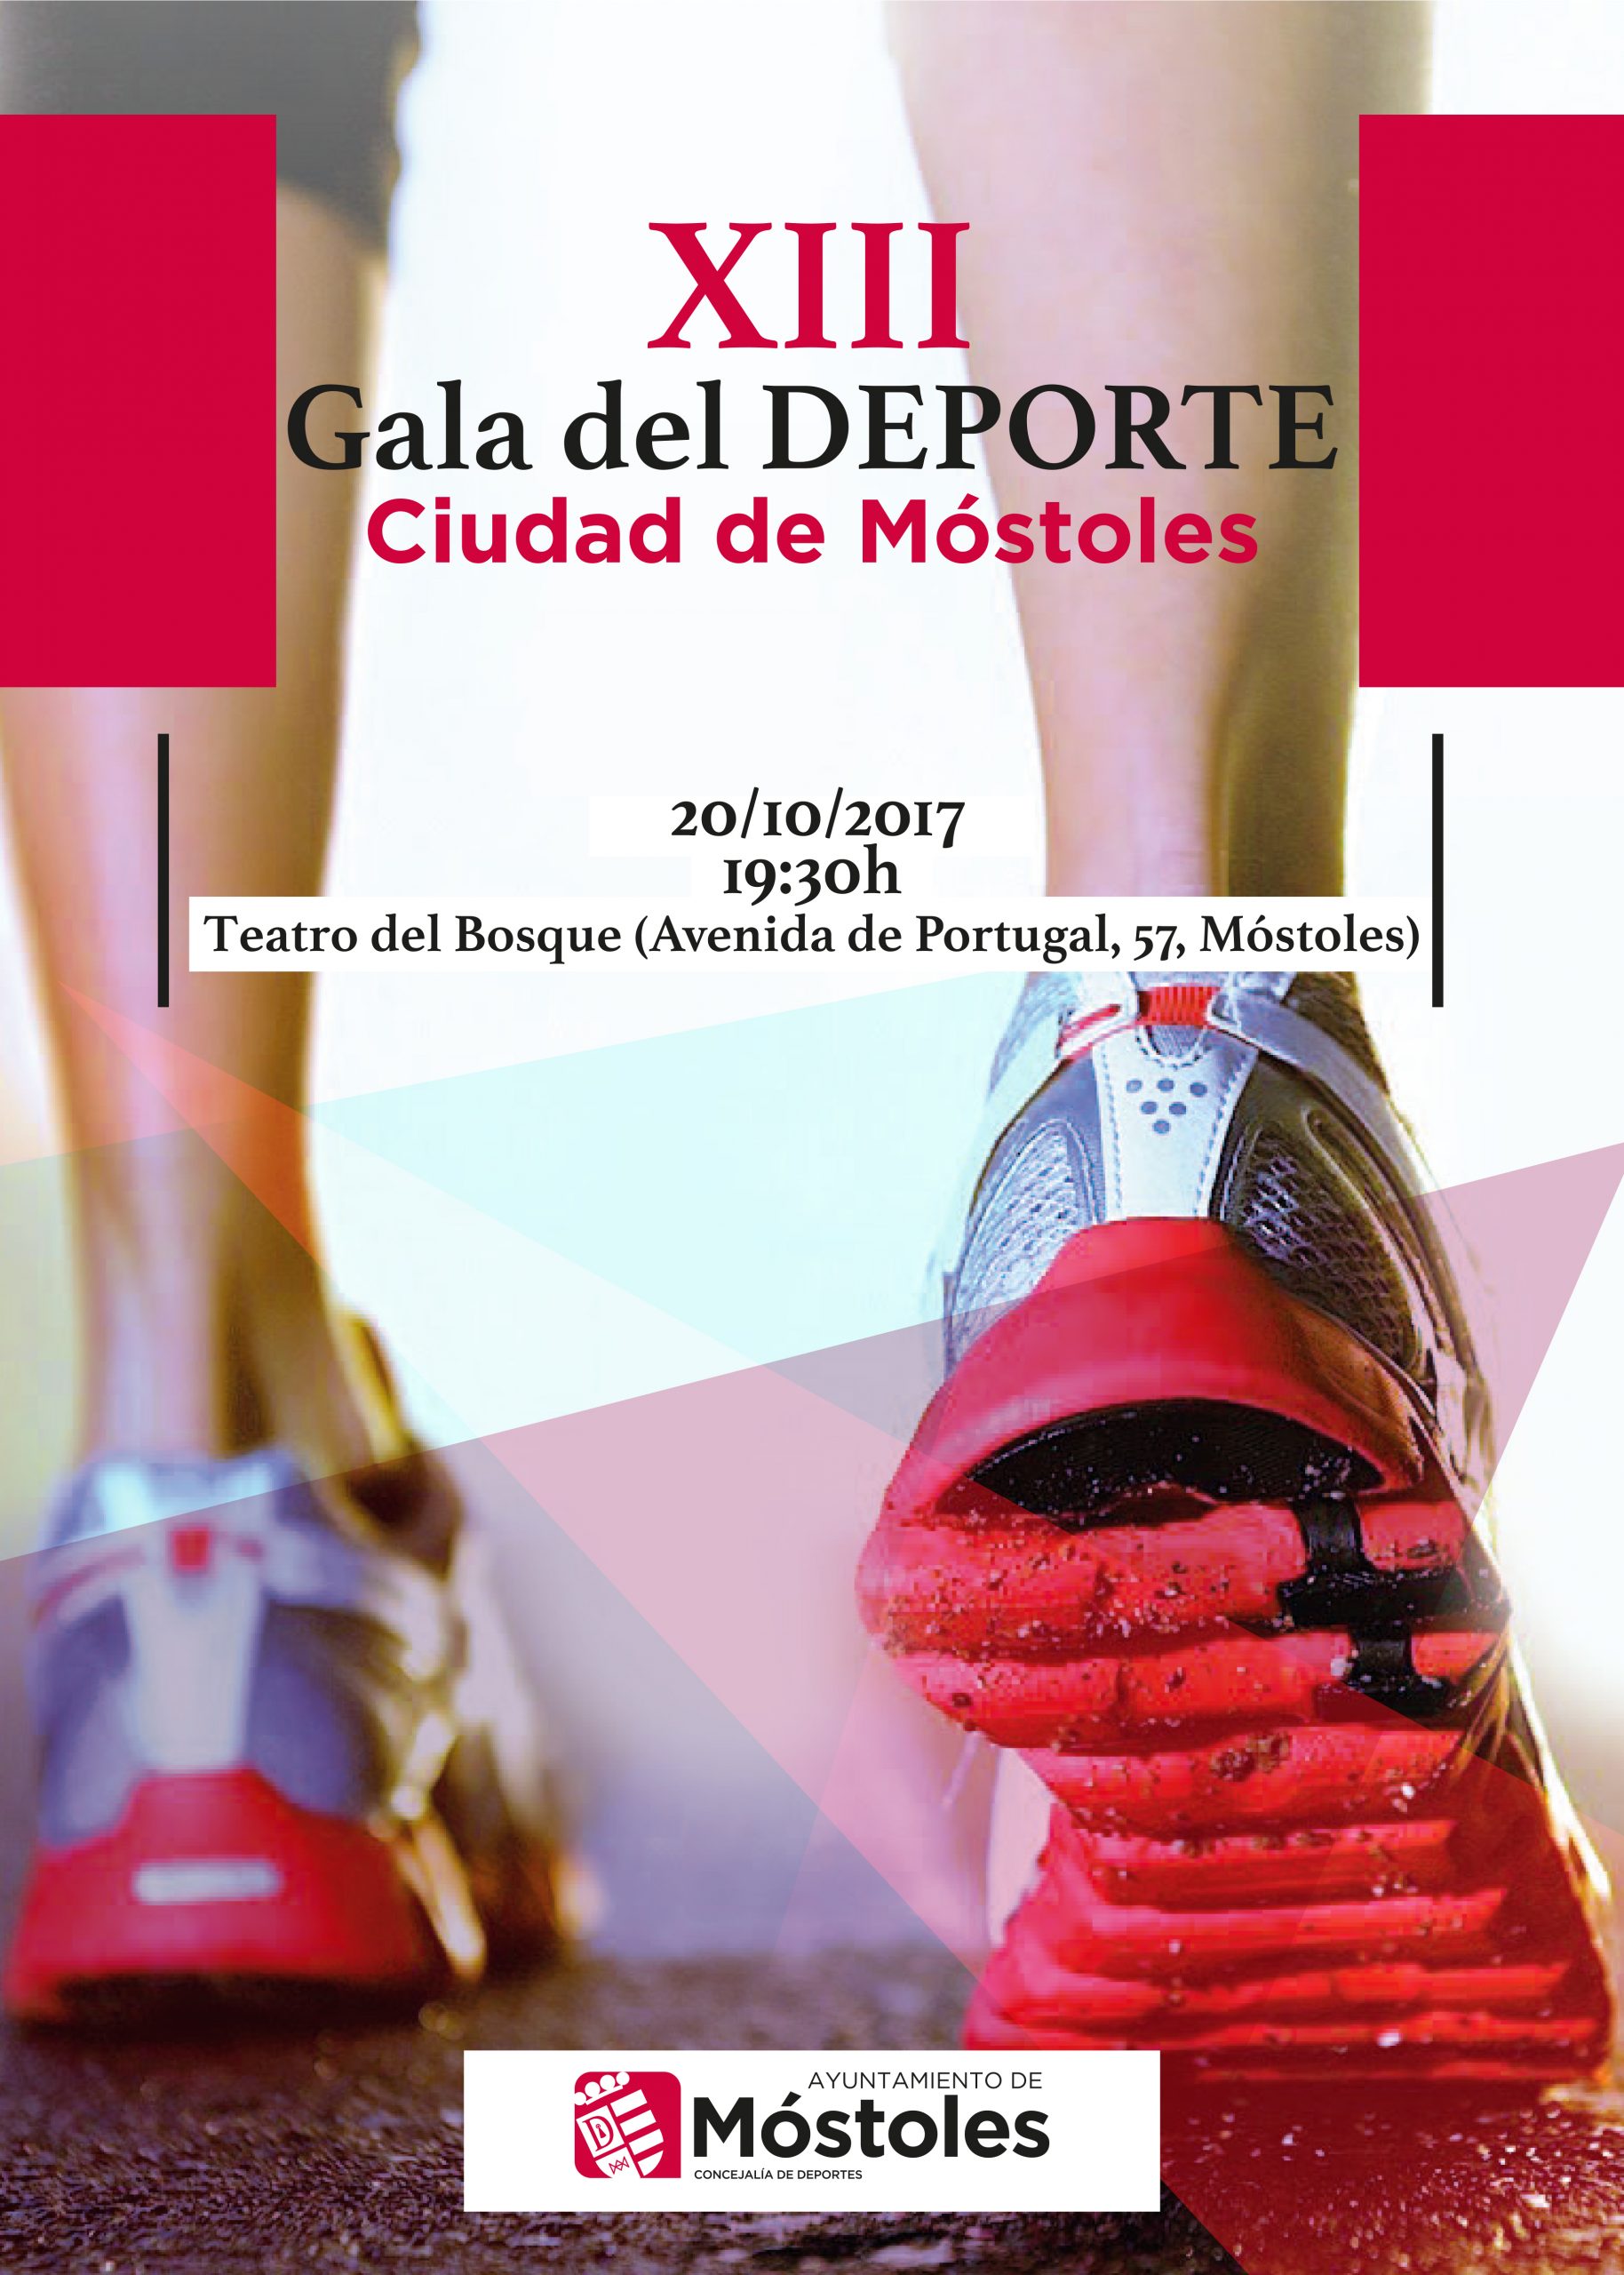 El Teatro del Bosque acogerá la XIII Gala del Deporte, el próximo viernes 20 de octubre